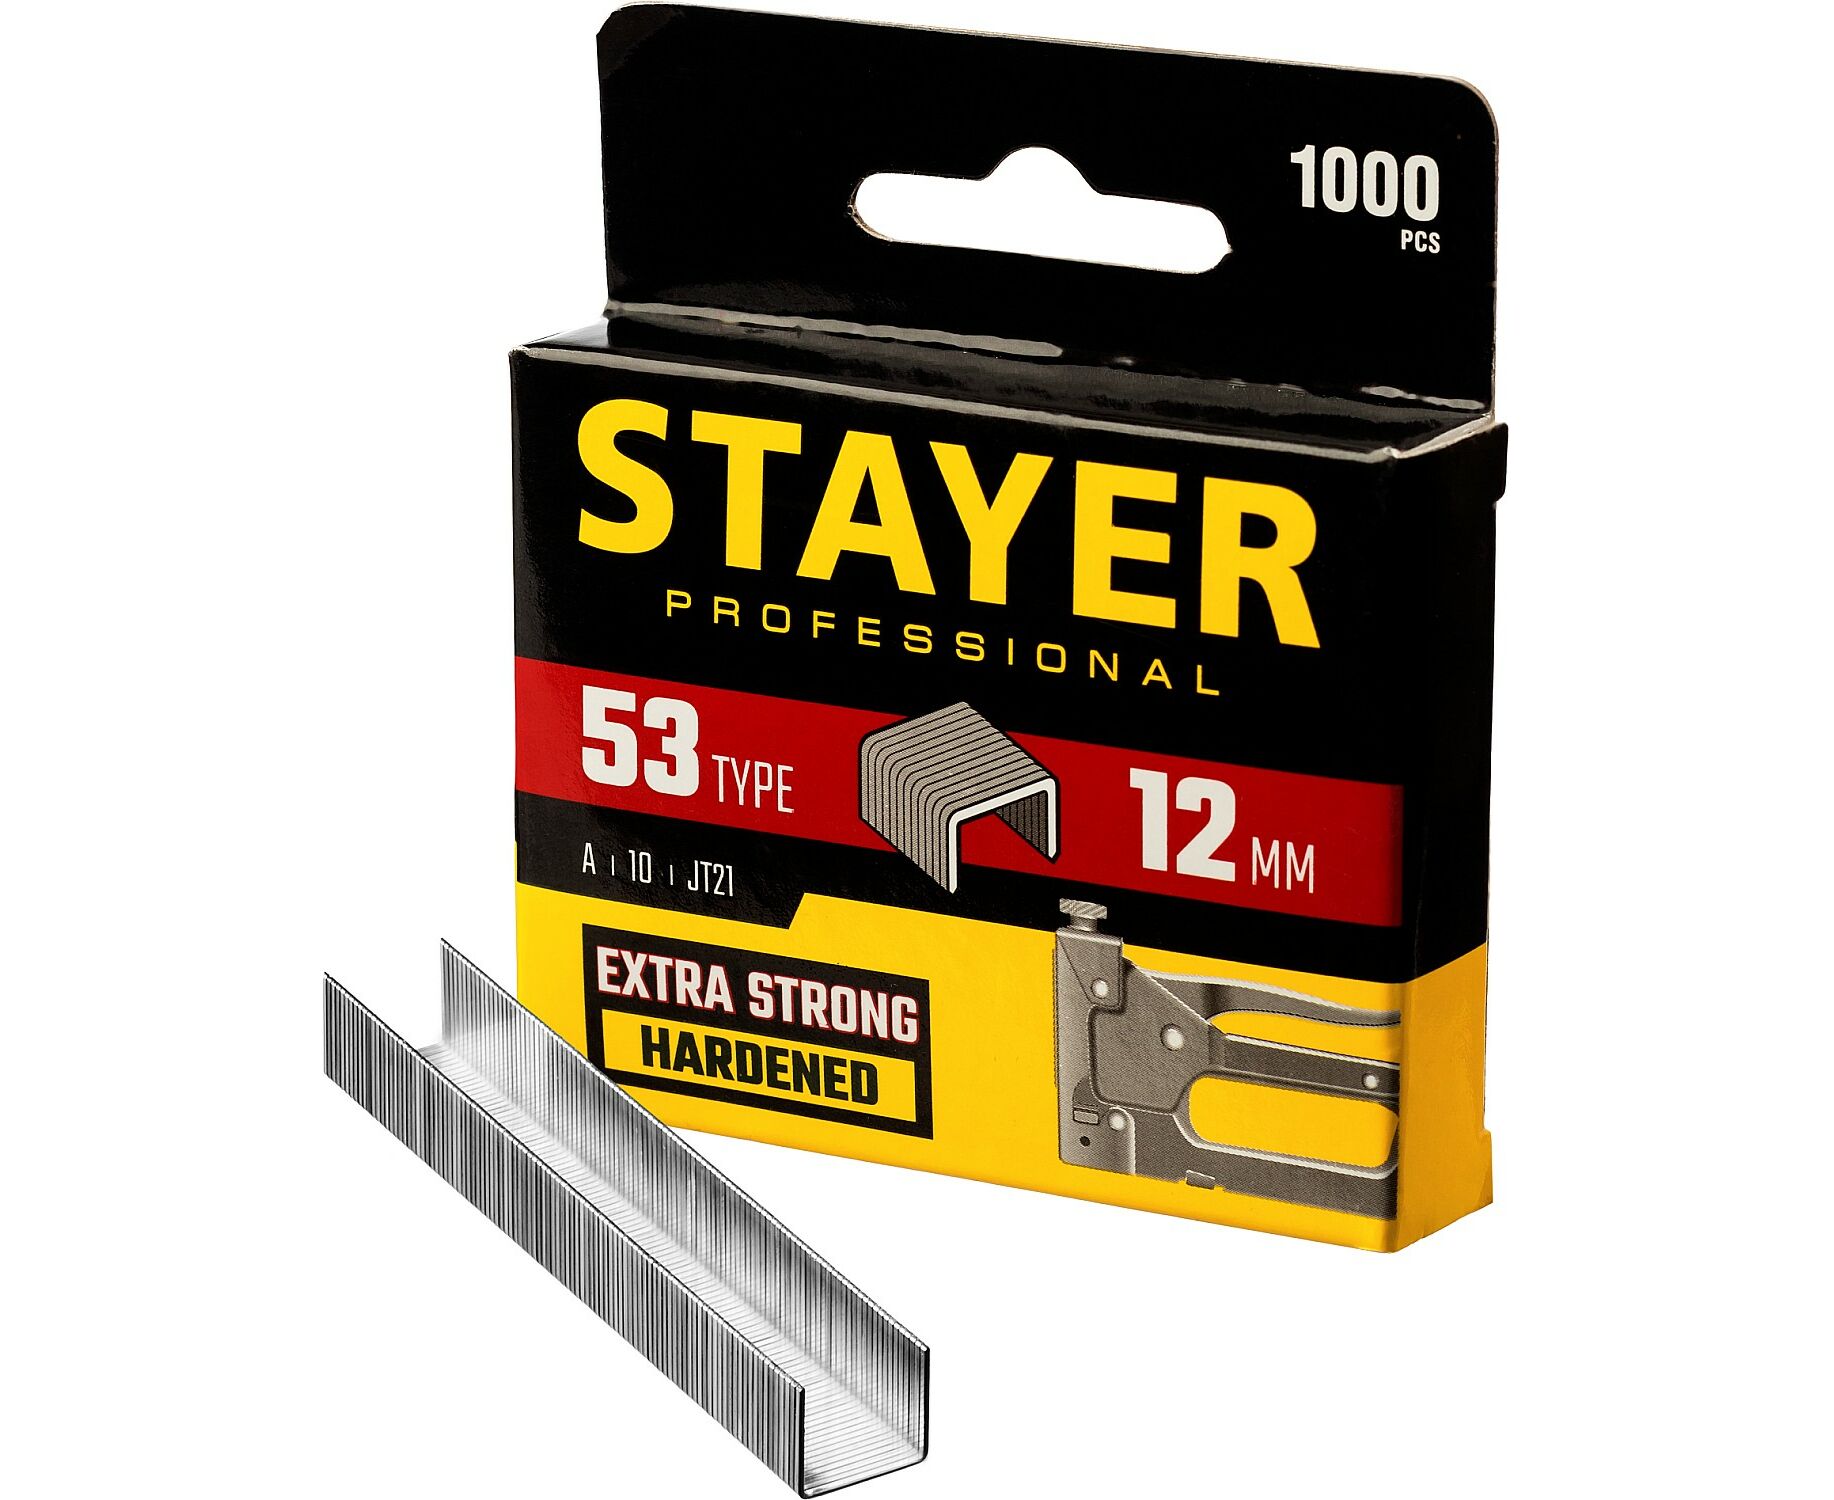 Скобы для электростеплера STAYER 12 мм 1000 шт пояс для инструментов кожаный 10 карманов 2 скобы stayer master 38510